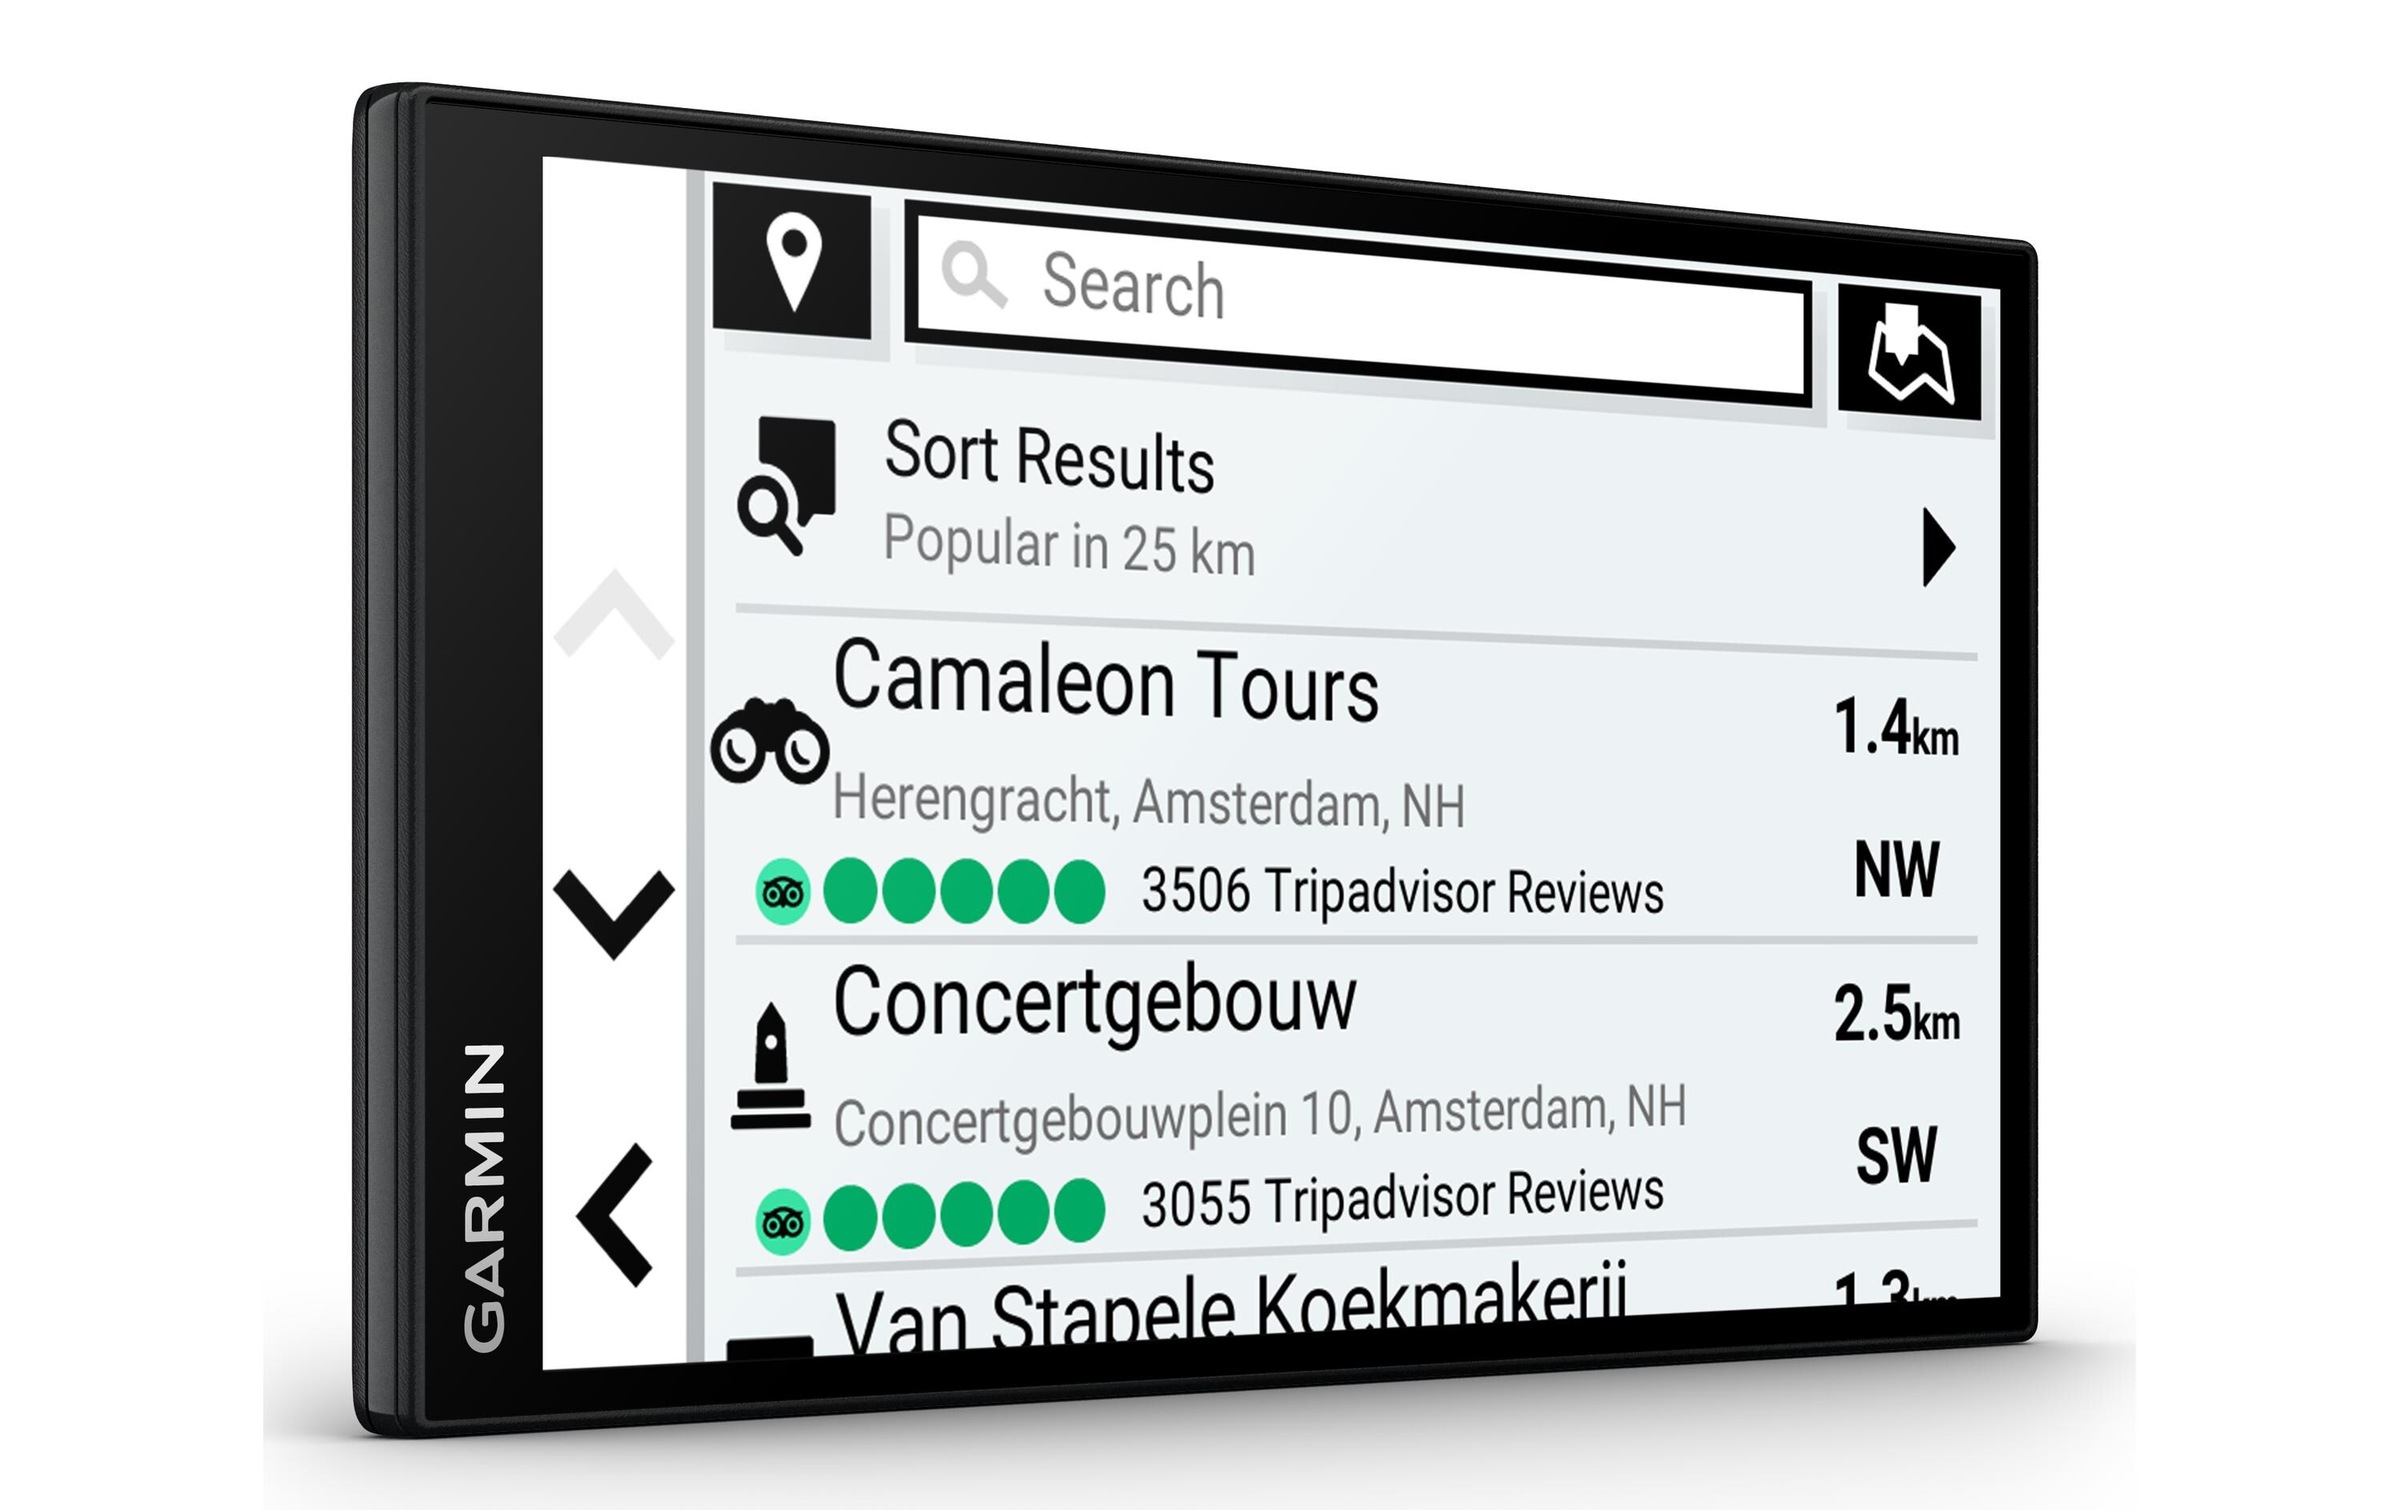 Garmin Navigationsgerät »DriveSmart«, (Europa (45 Länder) Karten-Updates)